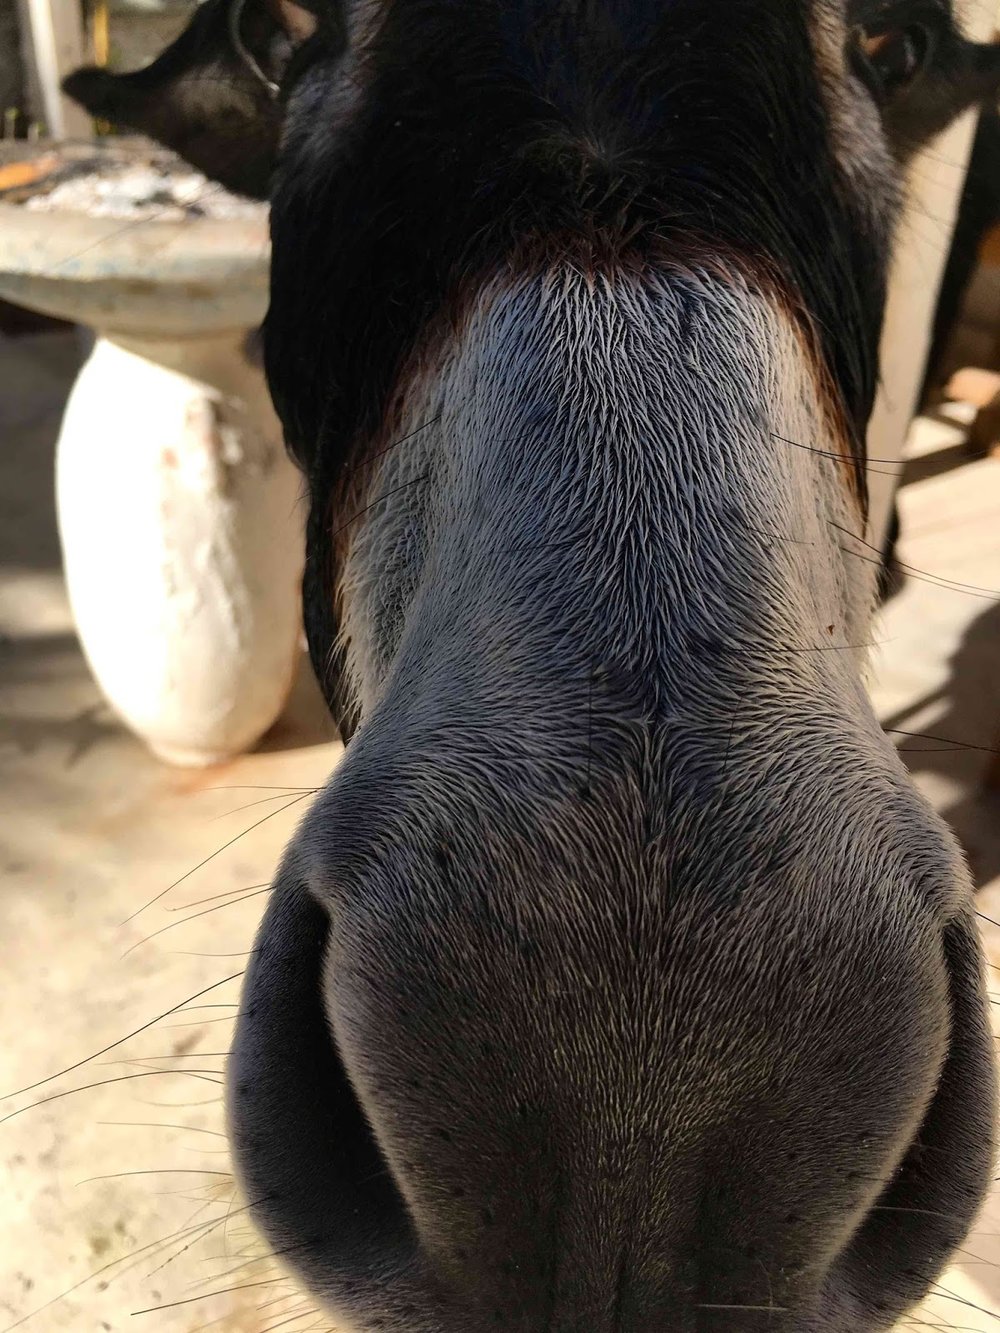 Donkey in Marrakech